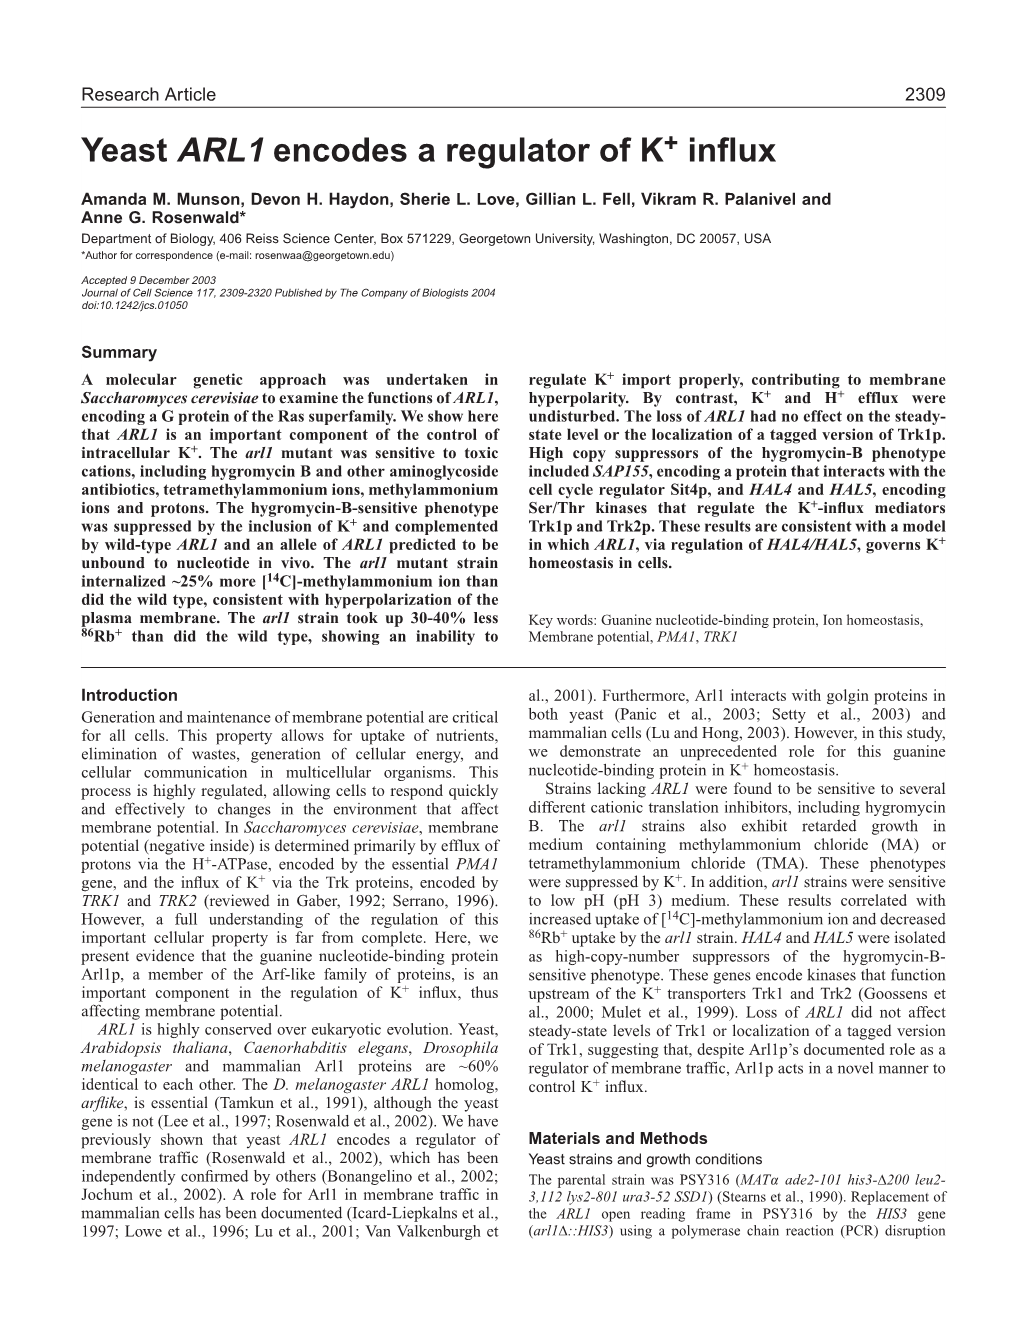 Yeast ARL1 Encodes a Regulator of K+ Influx